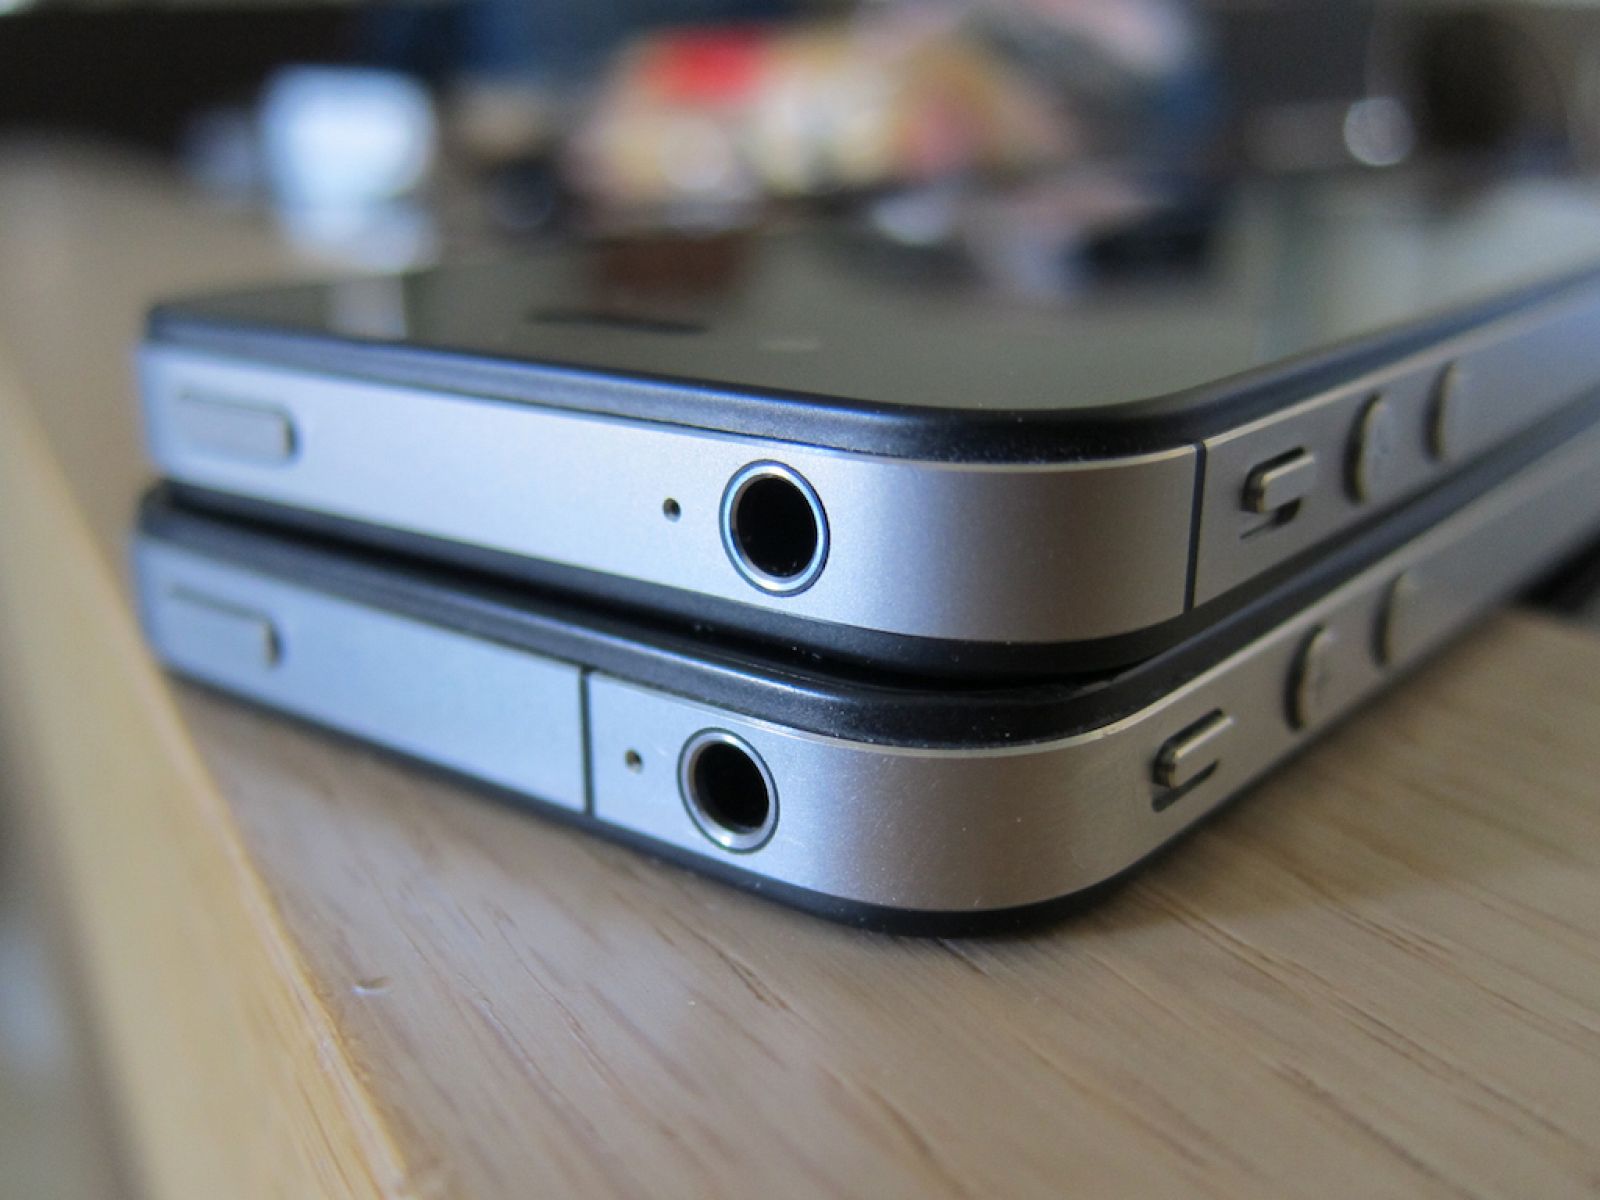 Físicamente, el iPhone4 y el iPhone 4S (arriba) son casi idénticos, salvo por las marcas negras que delimitan las antenas del teléfono